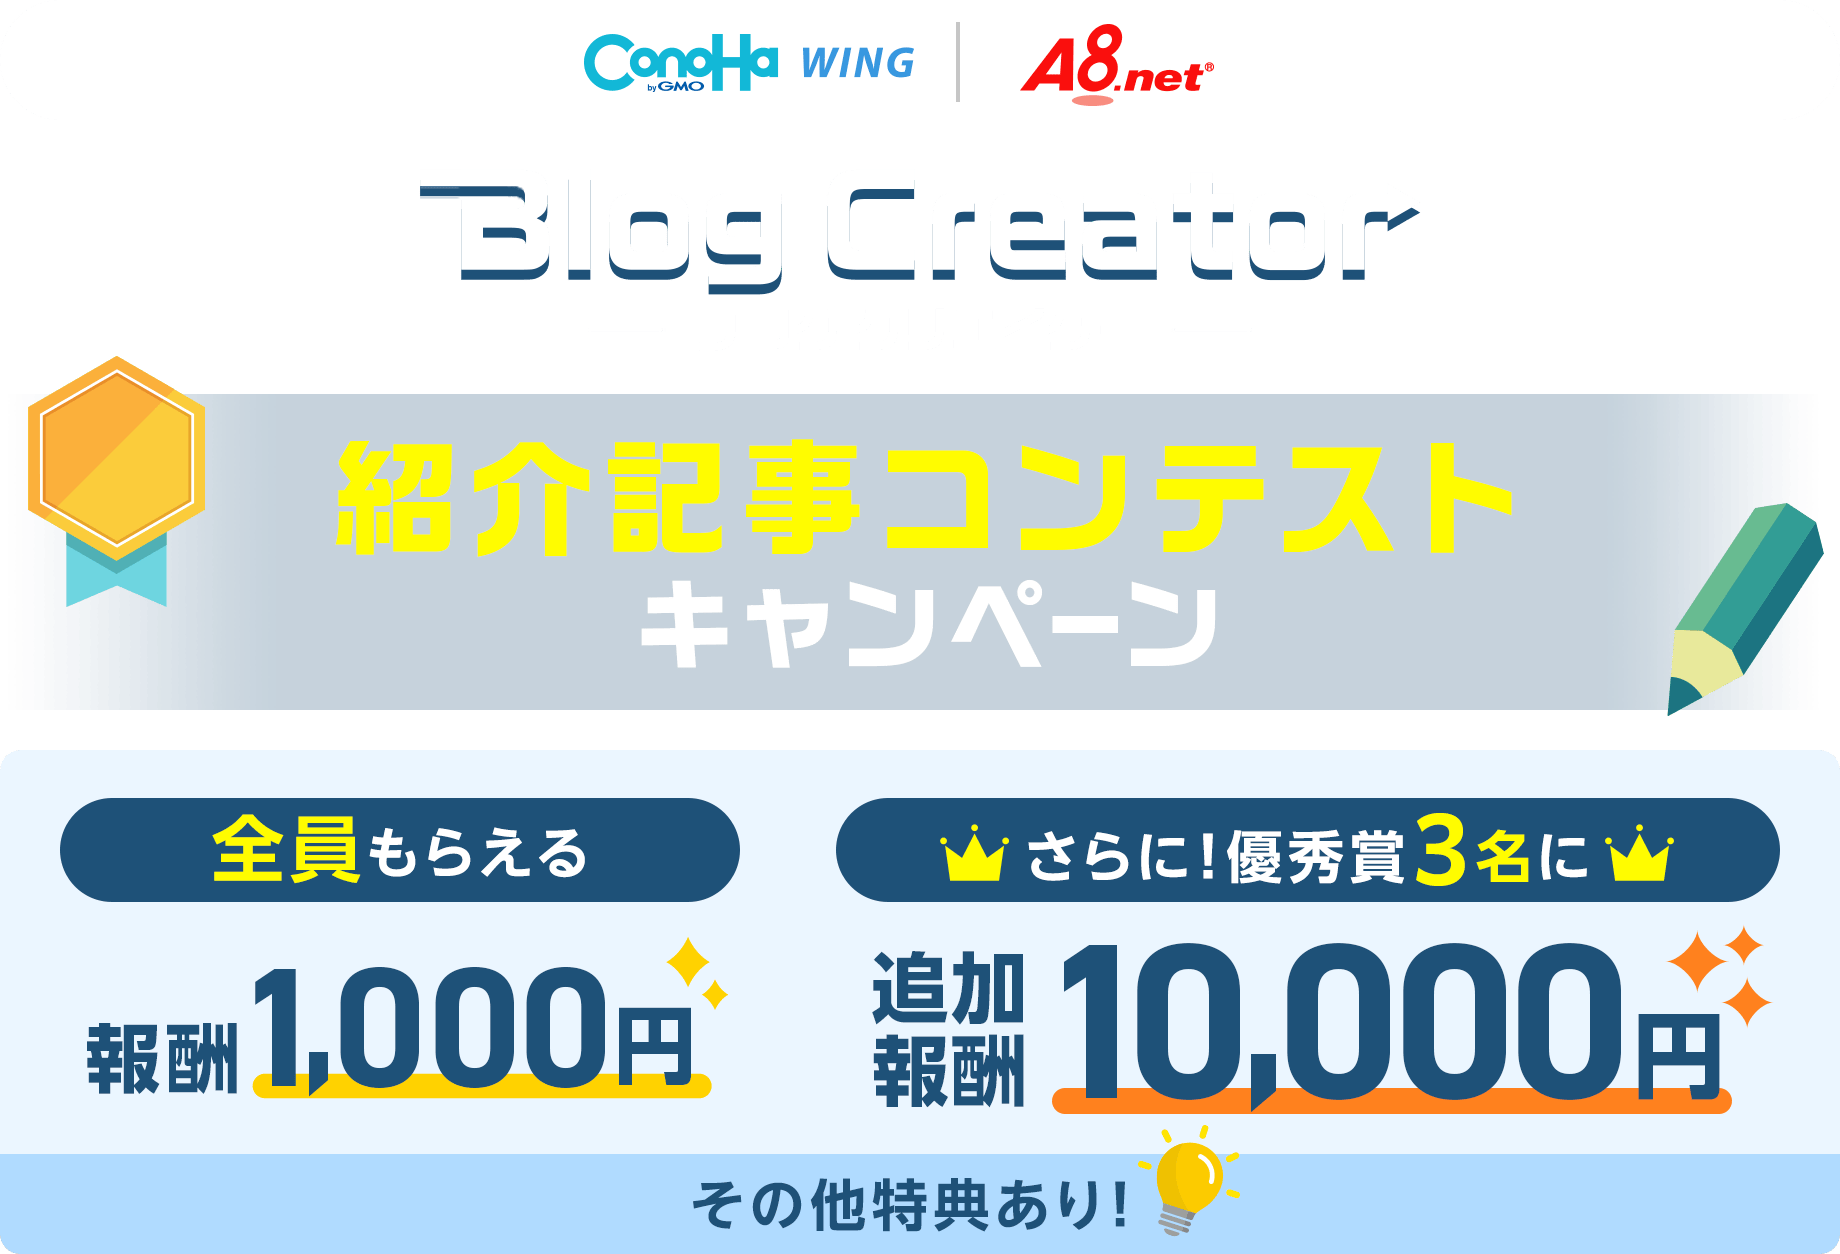 ConoHa WINGで提供中ブログ制作支援ツール『Blog Creator』の紹介記事コンテストを開催！記事を書いてご応募で特別報酬をプレゼント！